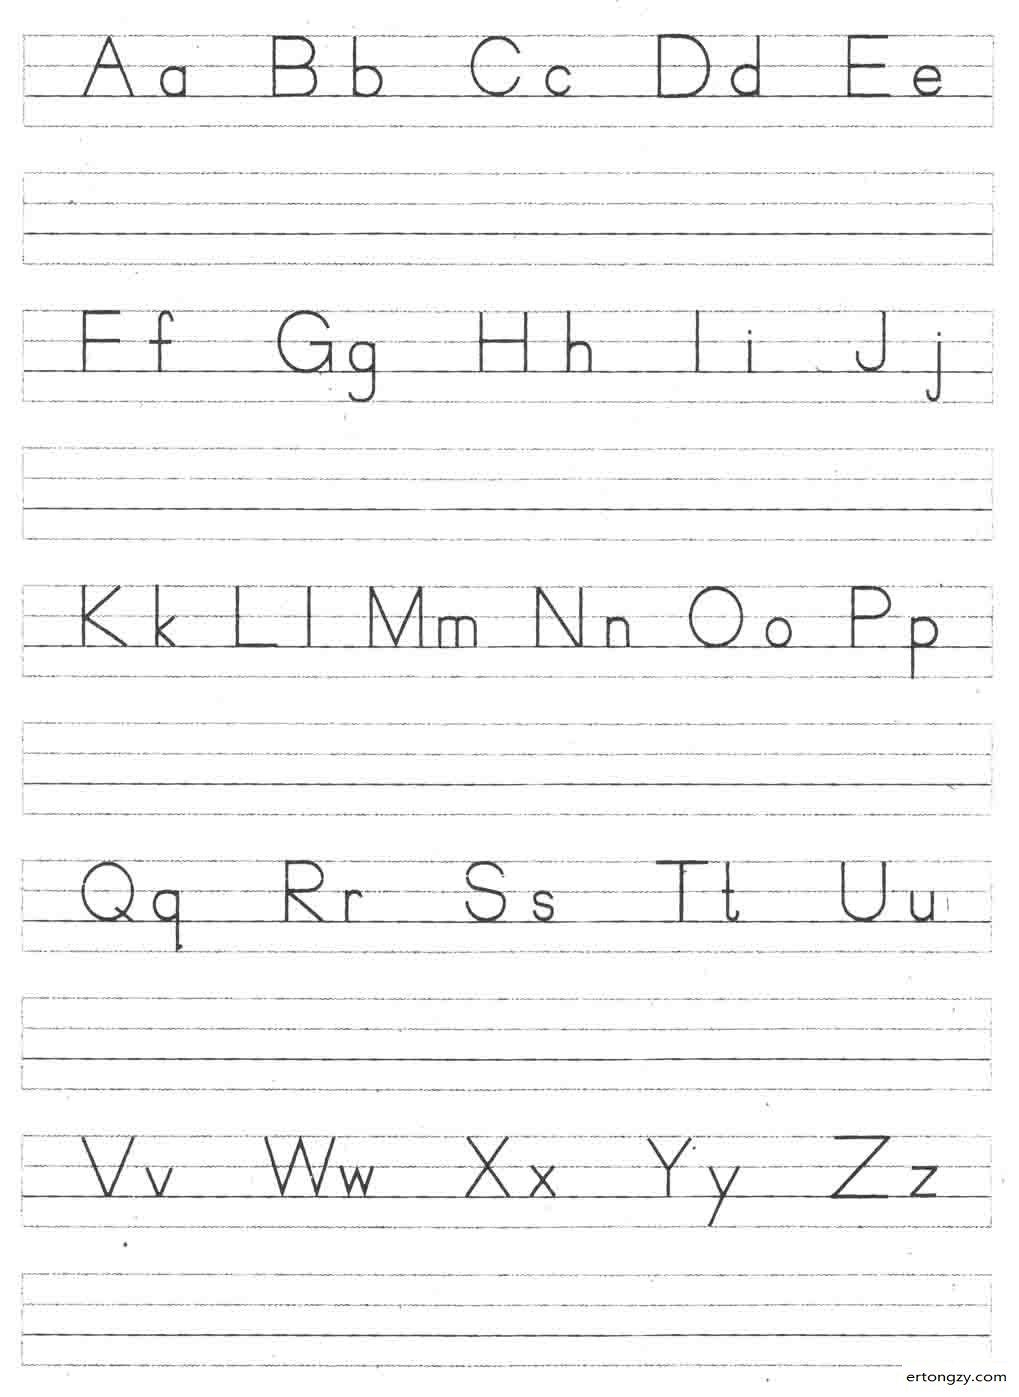 26个汉语拼音字母表按字母顺序带大写